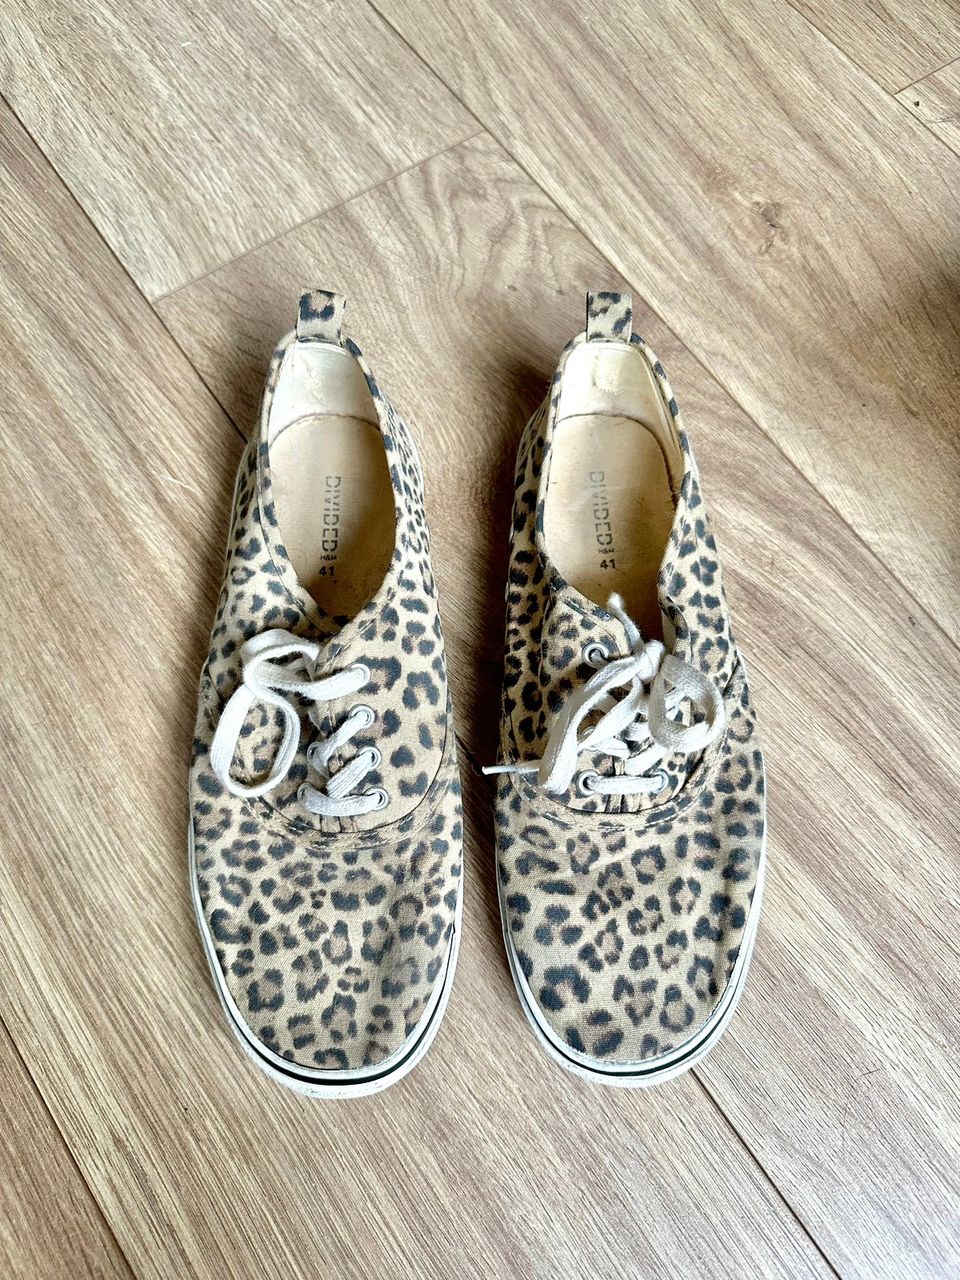 MYYDÄÄN naisten leopardikuvioiset kevät/kesä kengät koko 41